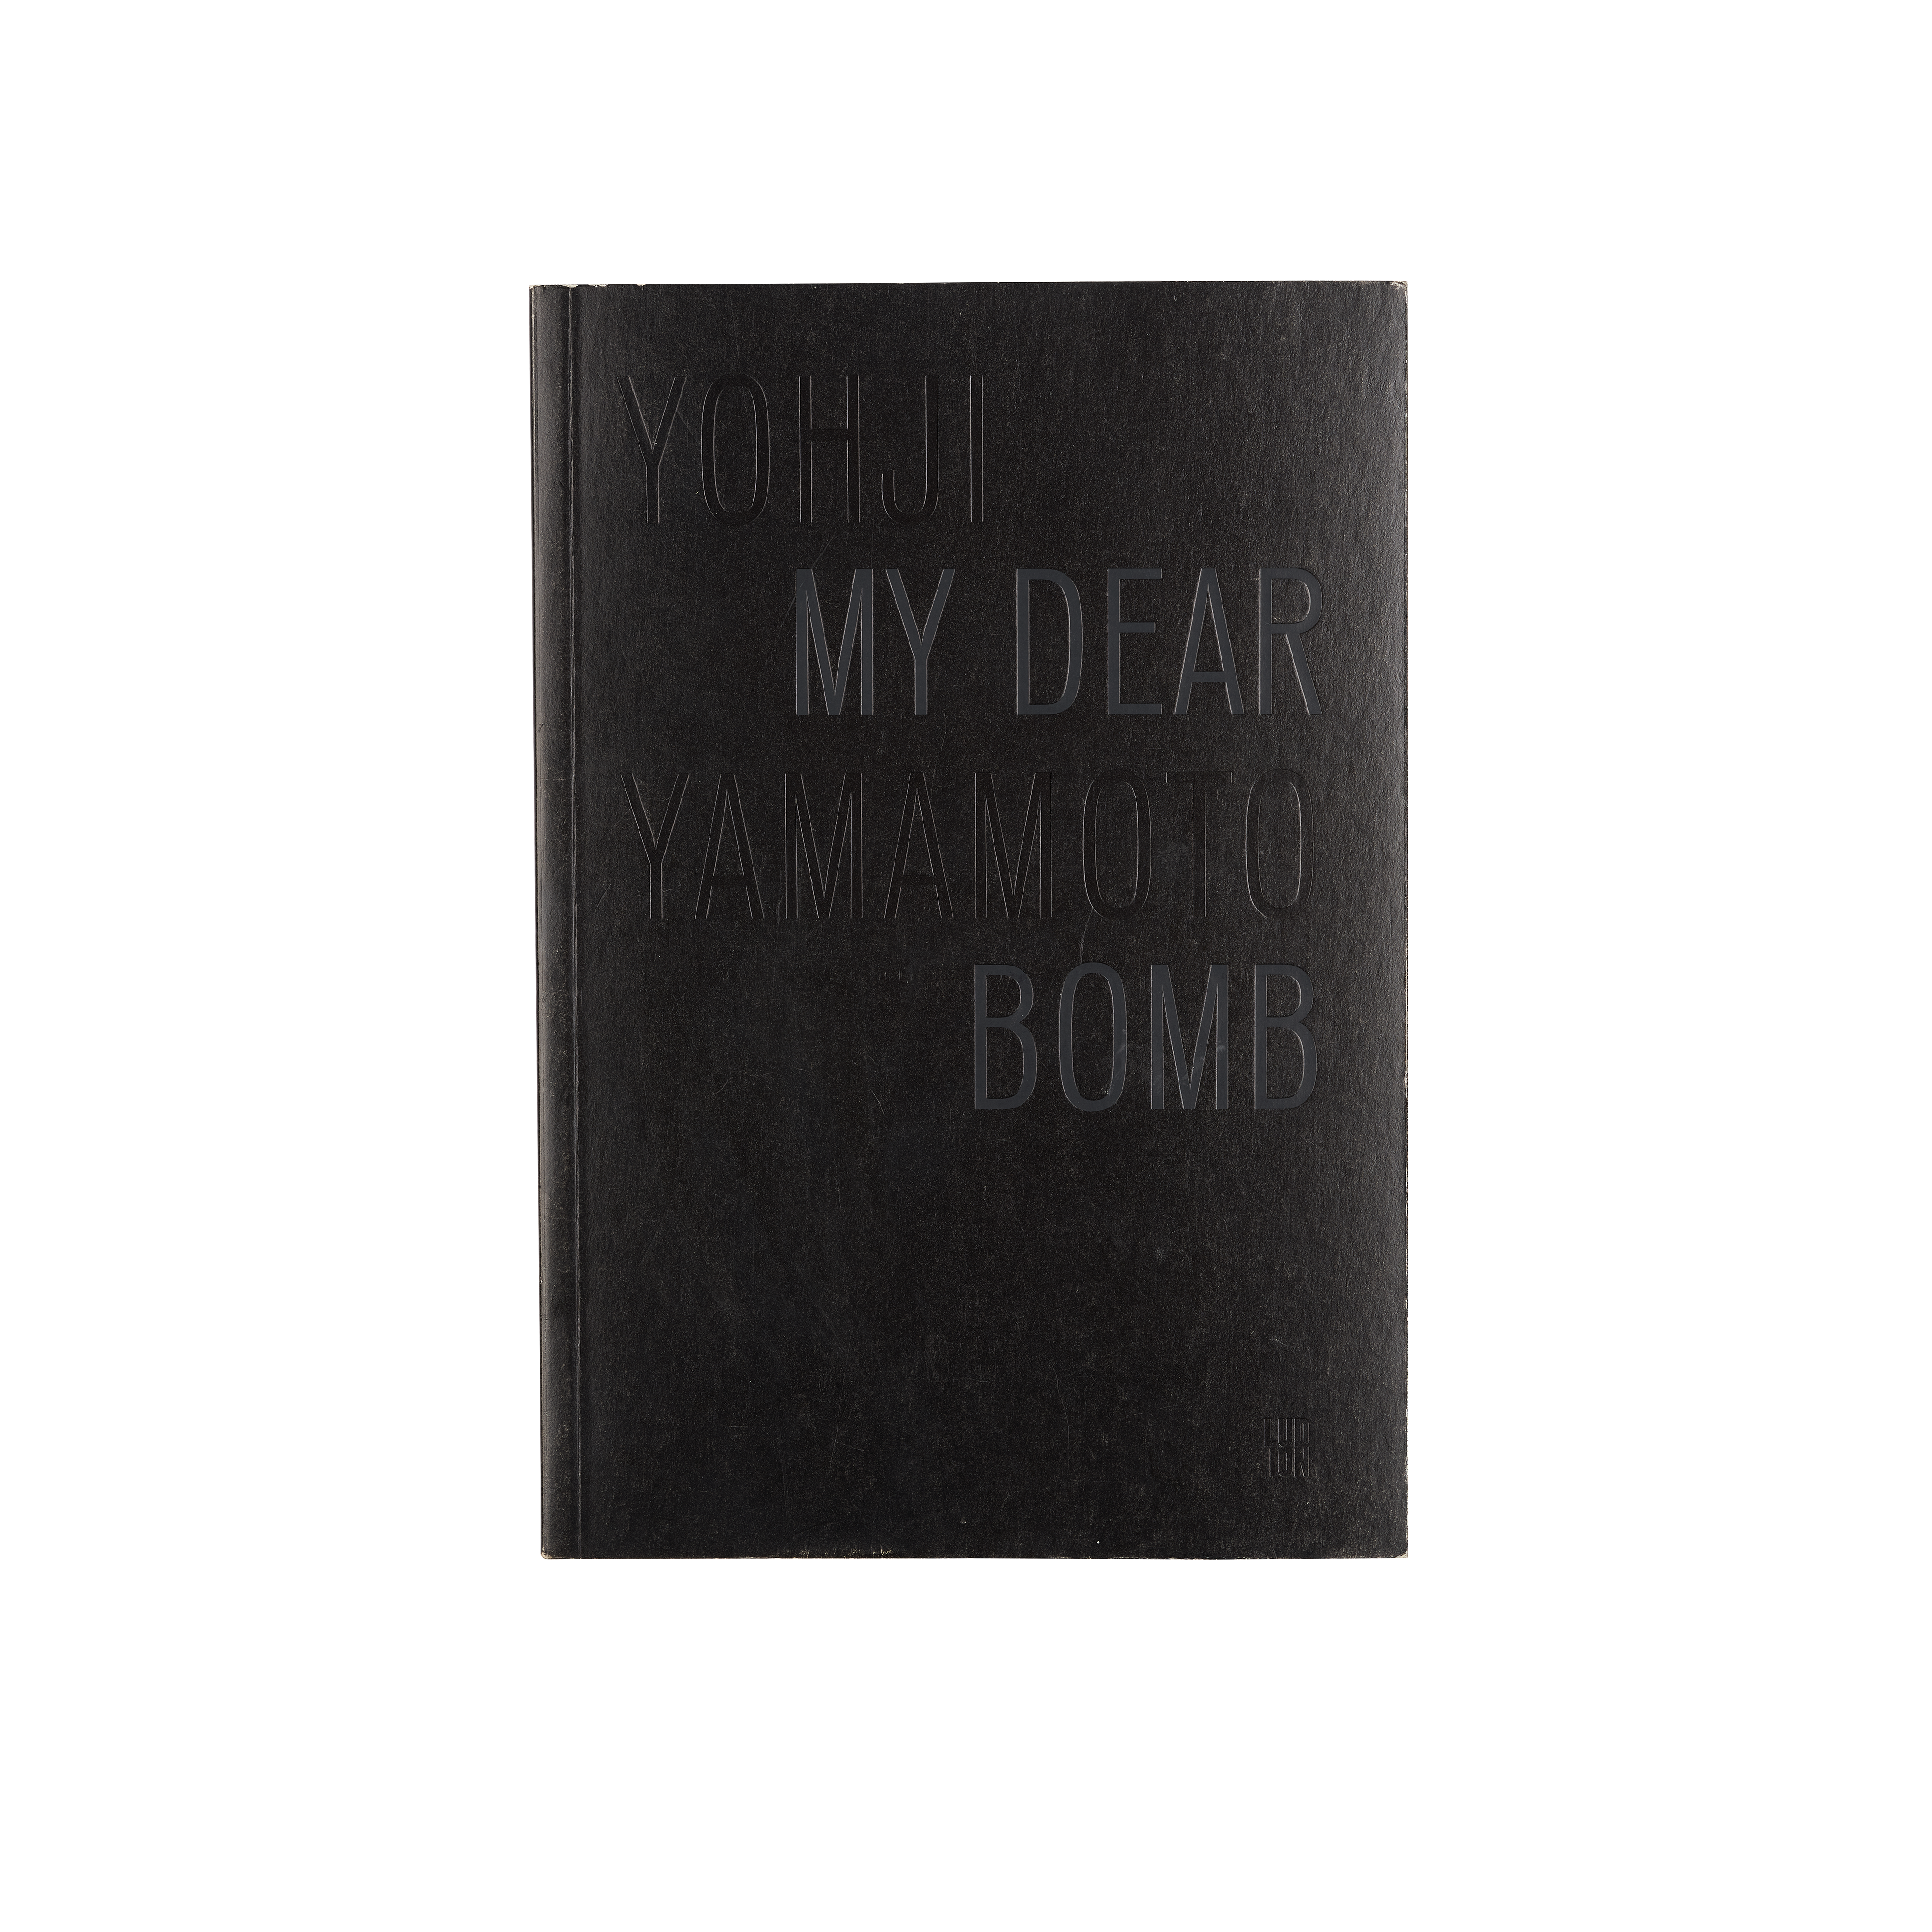 My Dear Bomb by Yohji Yamamoto